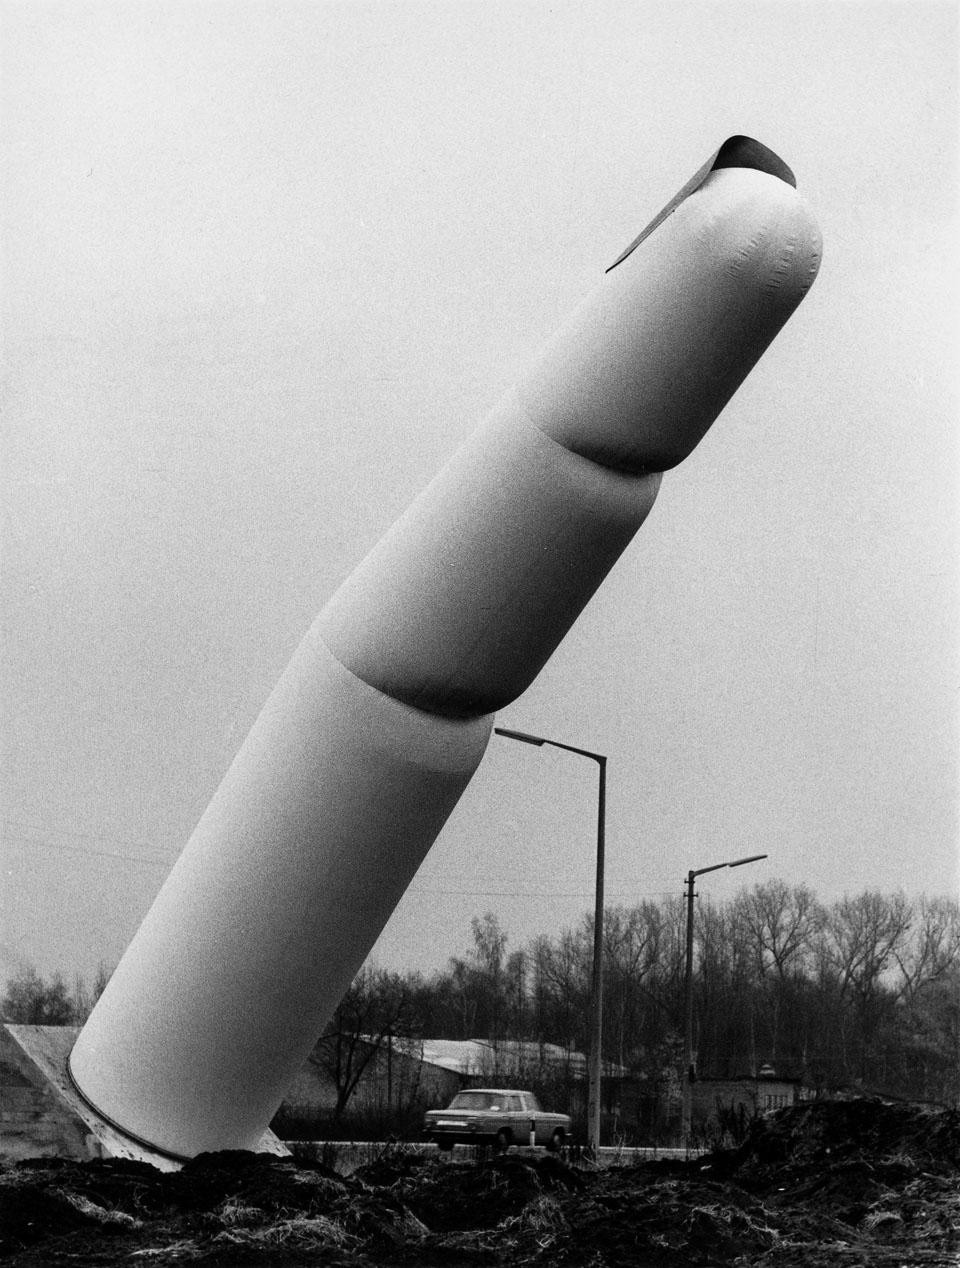 Haus-Rucker-Co., indice pneumatico lungo quattordici metri sull’autostrada per l’aeroporto di Norimberga, Symposion Urbanum Nürnberg, 1971.